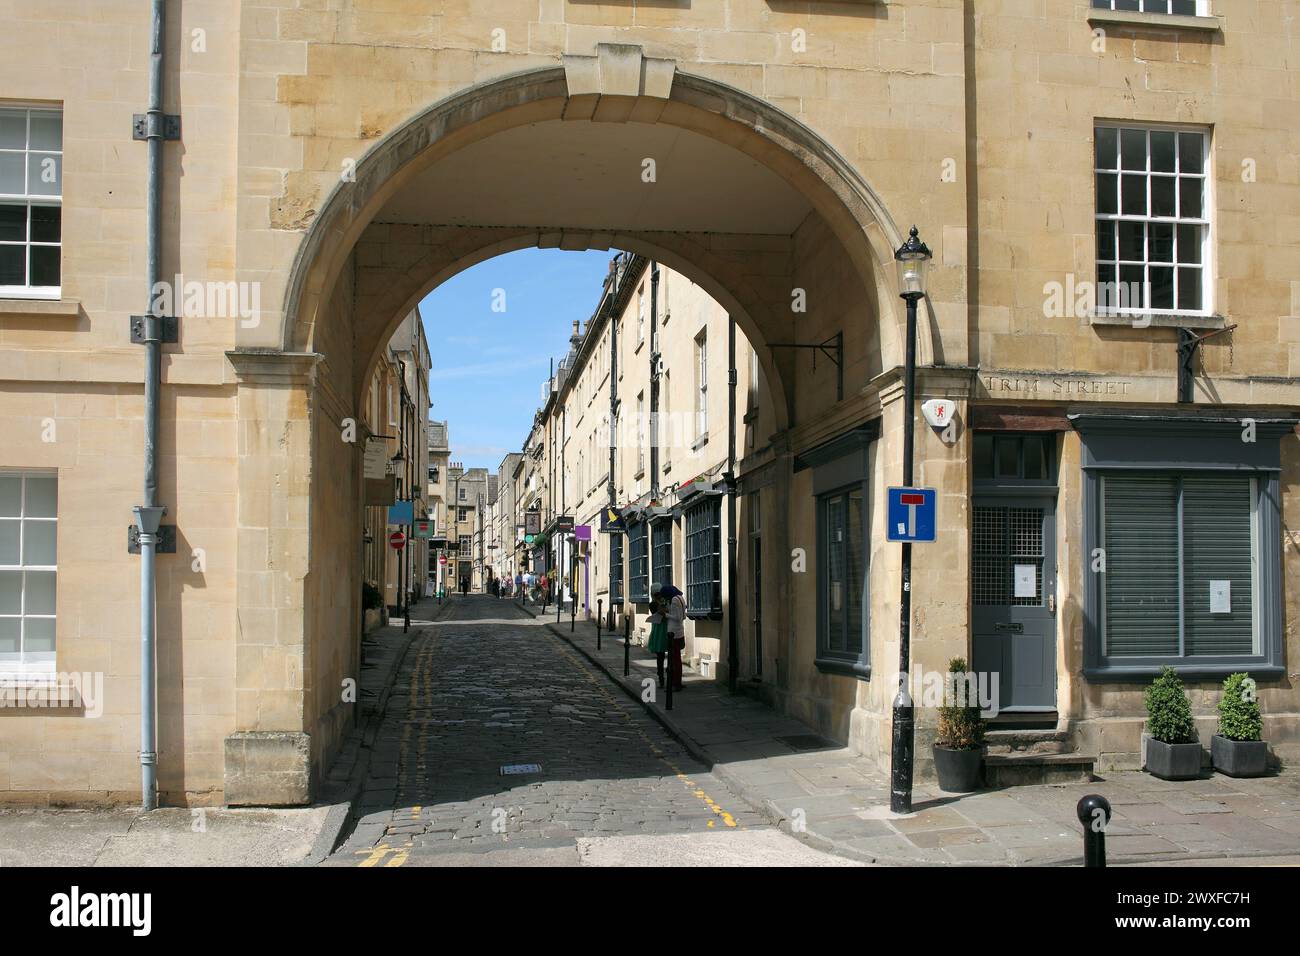 Queen St, Bath, vu à travers une arche sur Trim équipé Banque D'Images